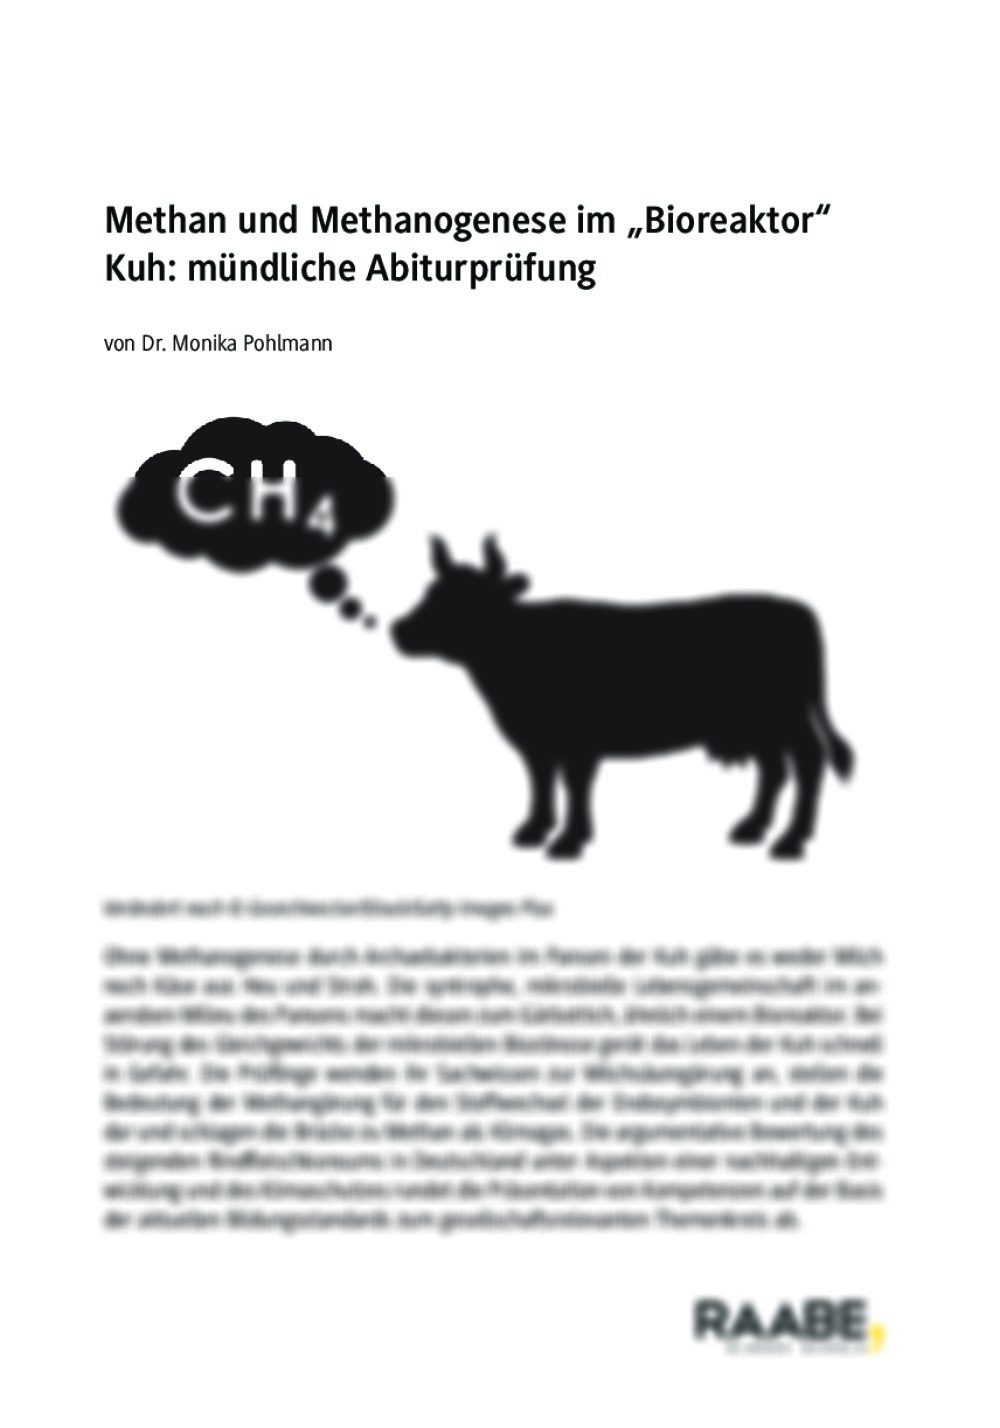 Mündliche Abiturprüfung: Methan und Methanogenese im „Bioreaktor“ Kuh - Seite 1